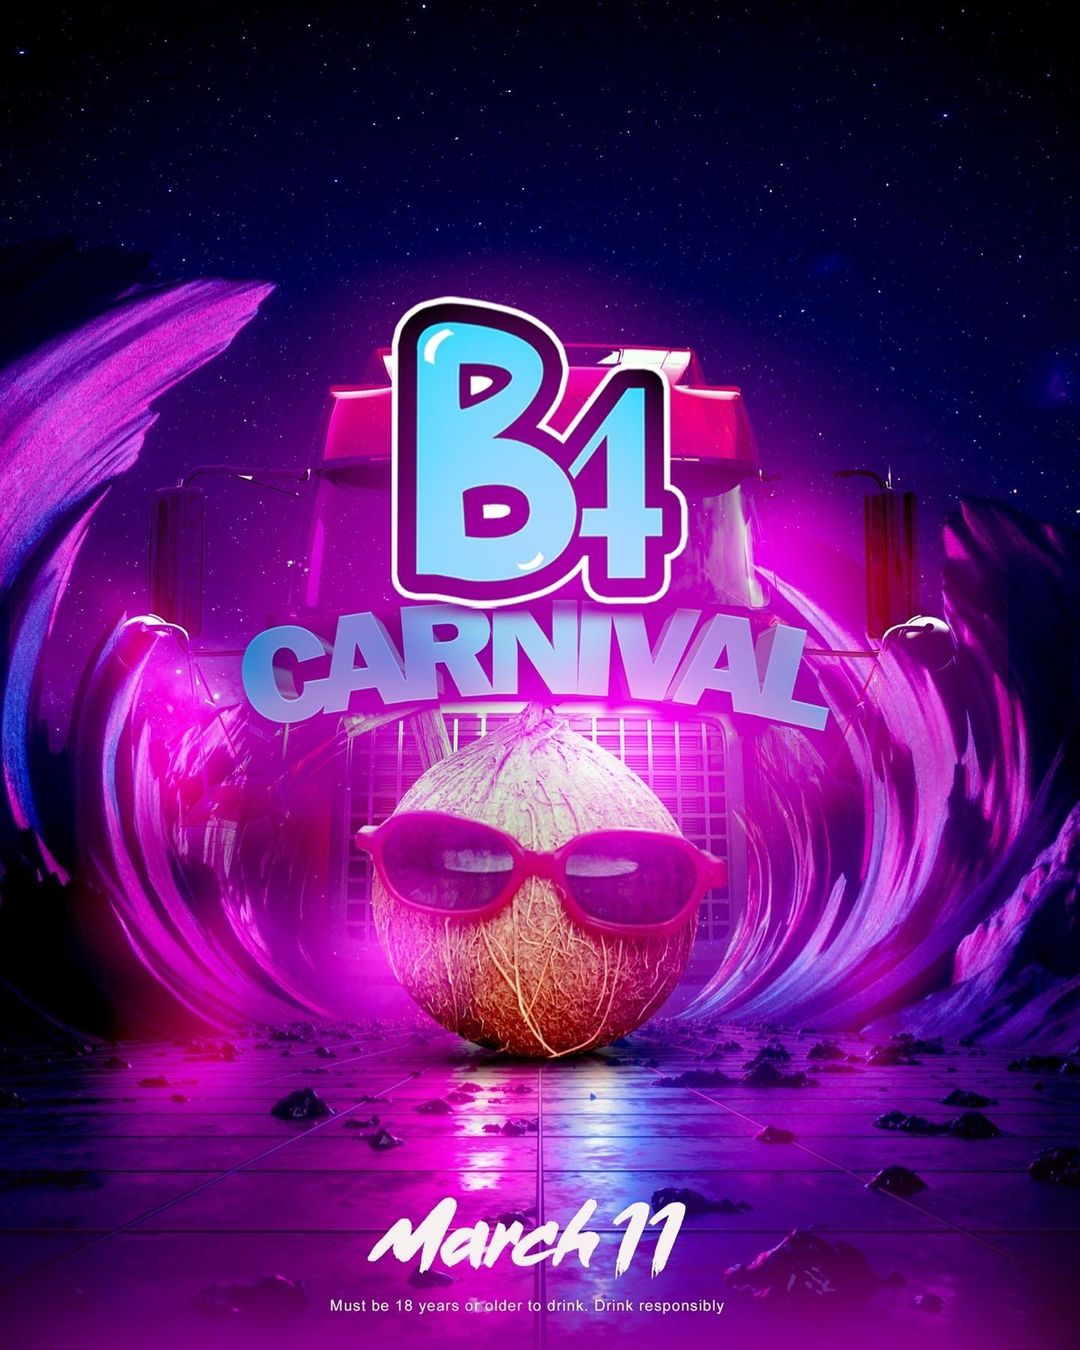 B4 Carnival